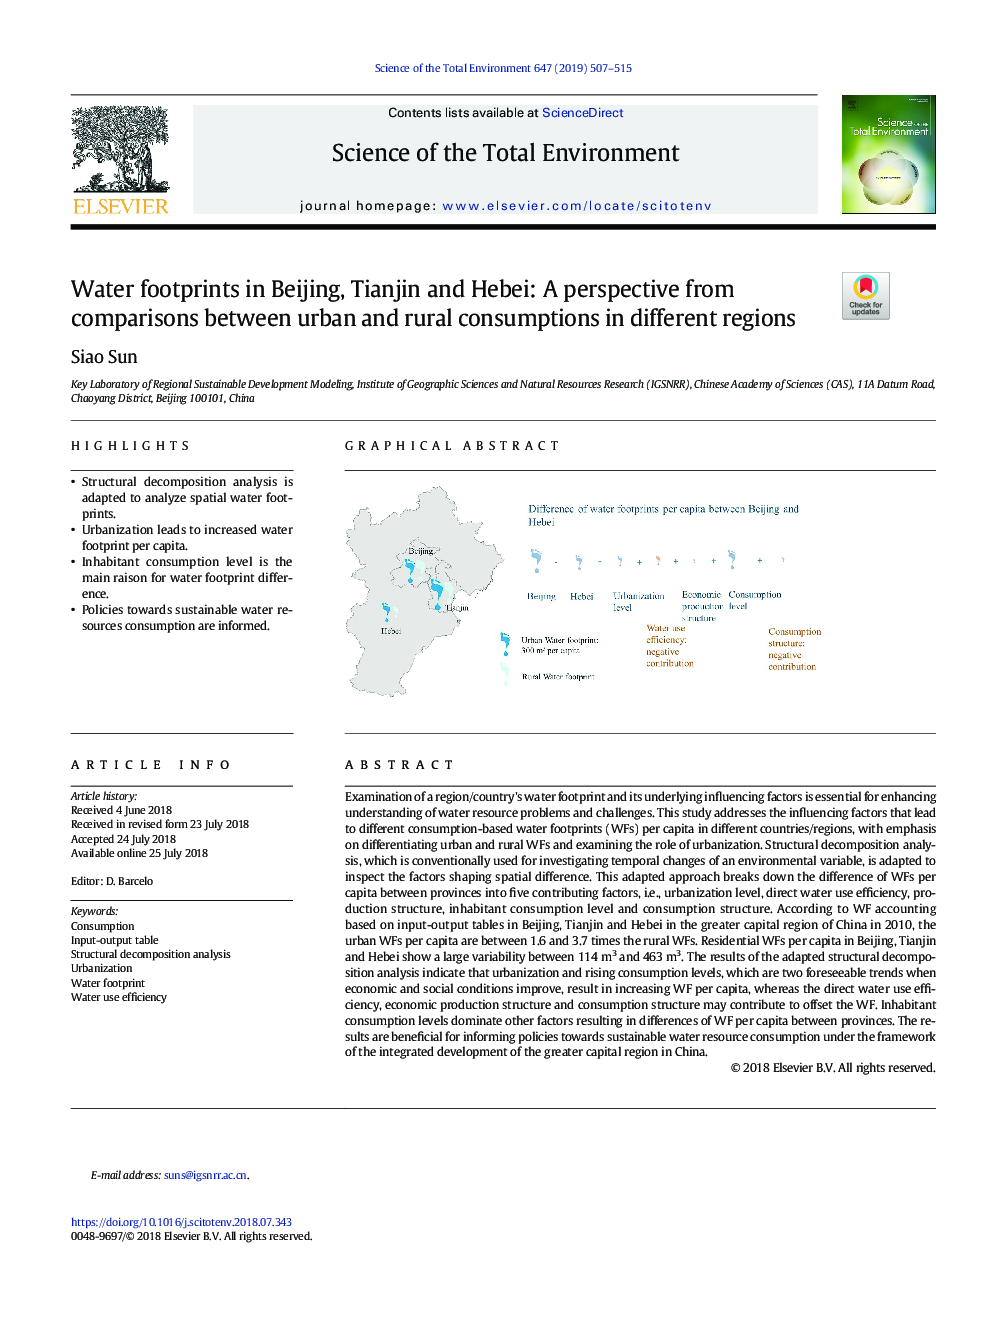 اثرات آب در پکن، تیانجین و هبی: چشم انداز از مقایسه مصرف شهری و روستایی در مناطق مختلف